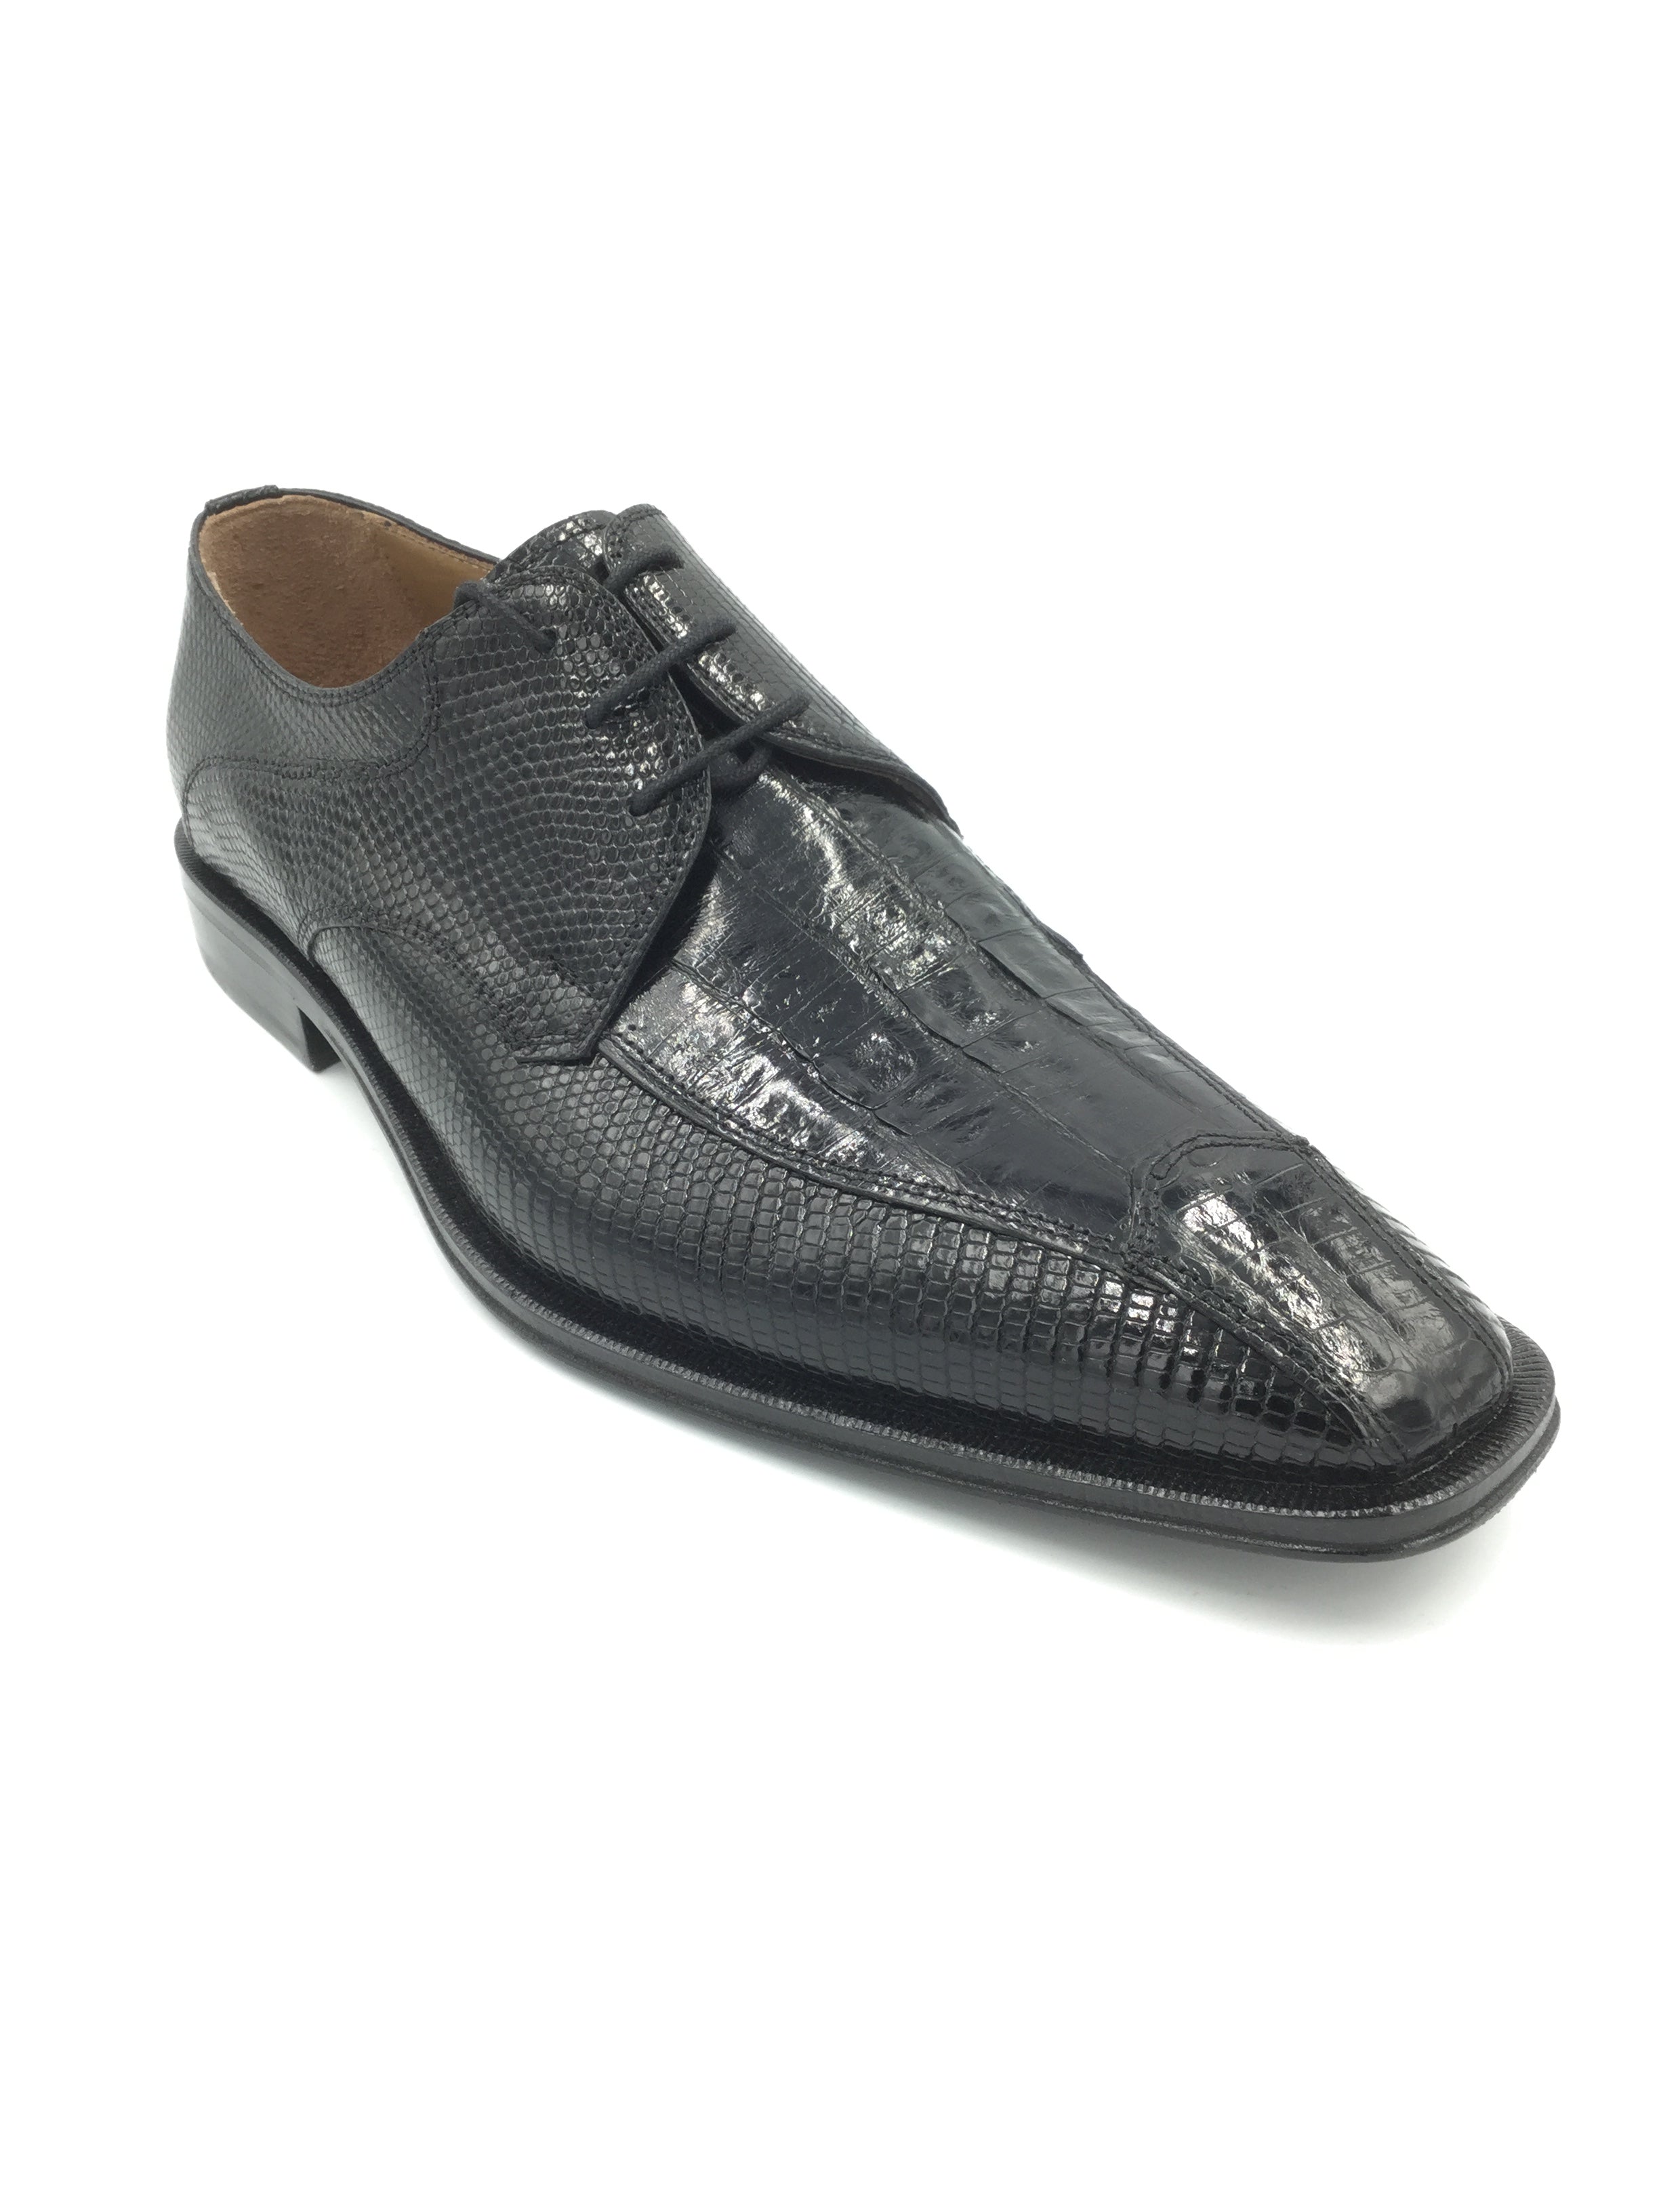 David Eden Unique Genuine Crocodile and Lizard Leather Black Shoe Size 9